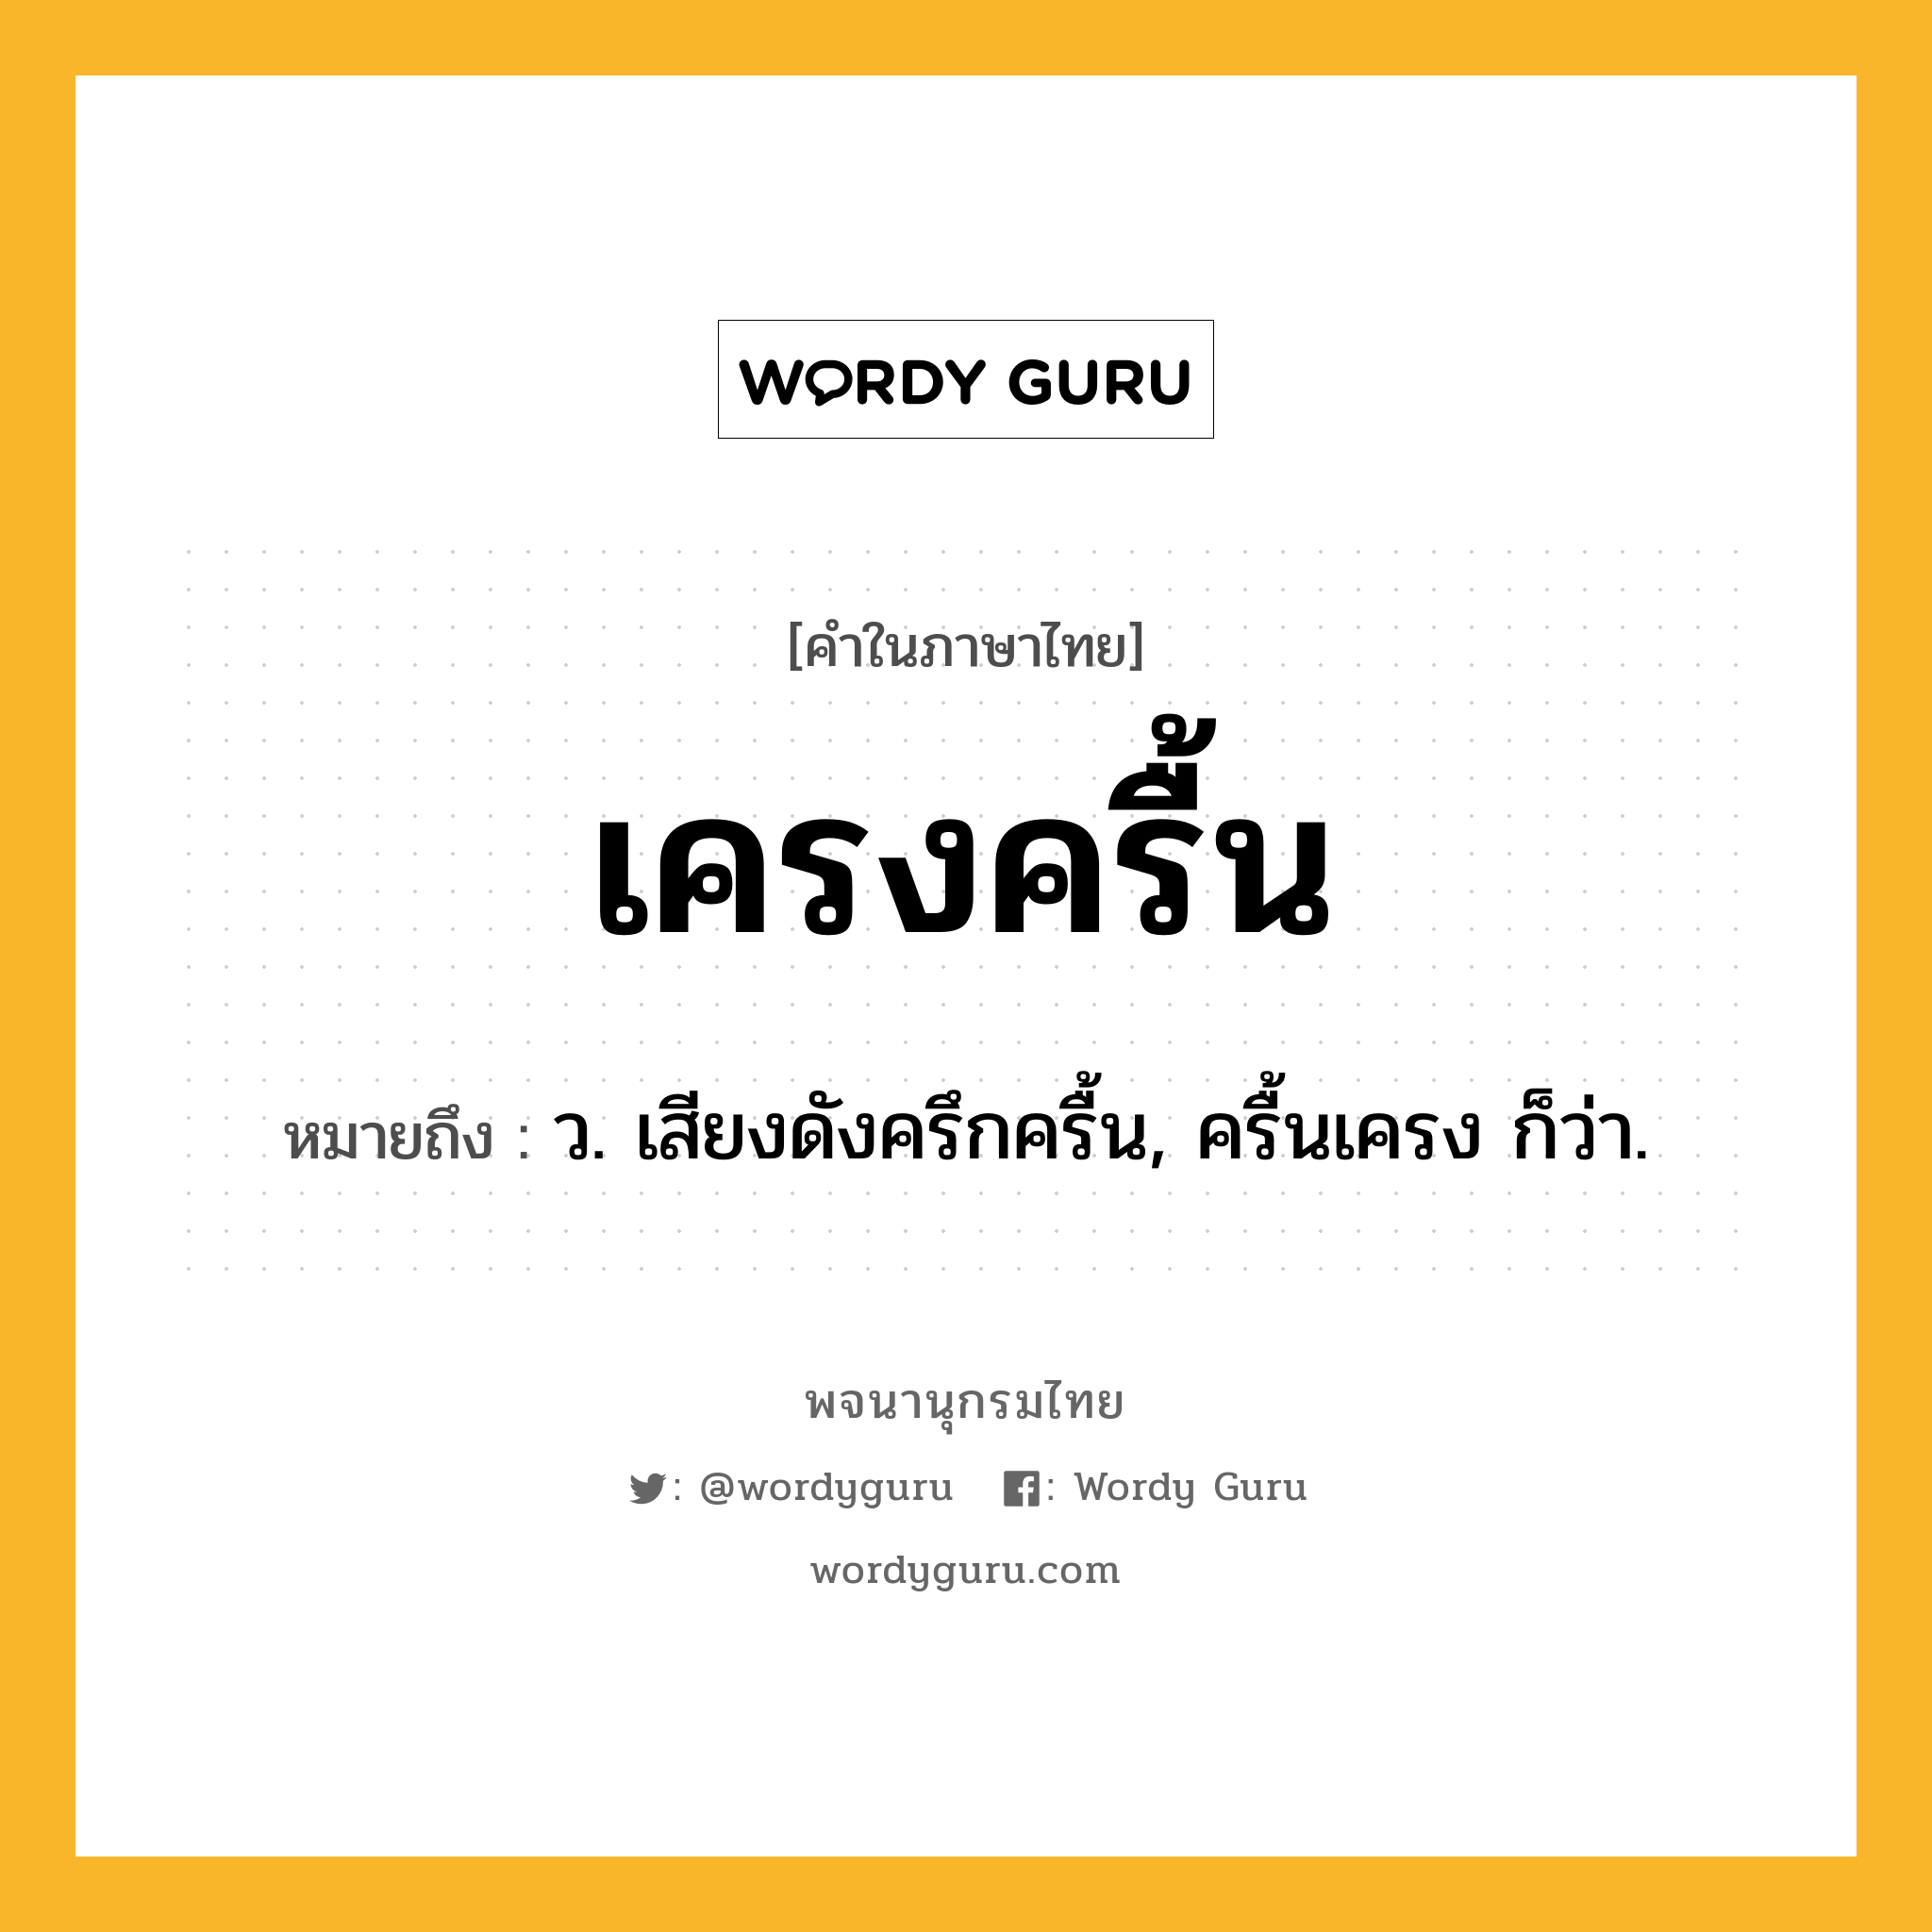 เครงครื้น ความหมาย หมายถึงอะไร?, คำในภาษาไทย เครงครื้น หมายถึง ว. เสียงดังครึกครื้น, ครื้นเครง ก็ว่า.